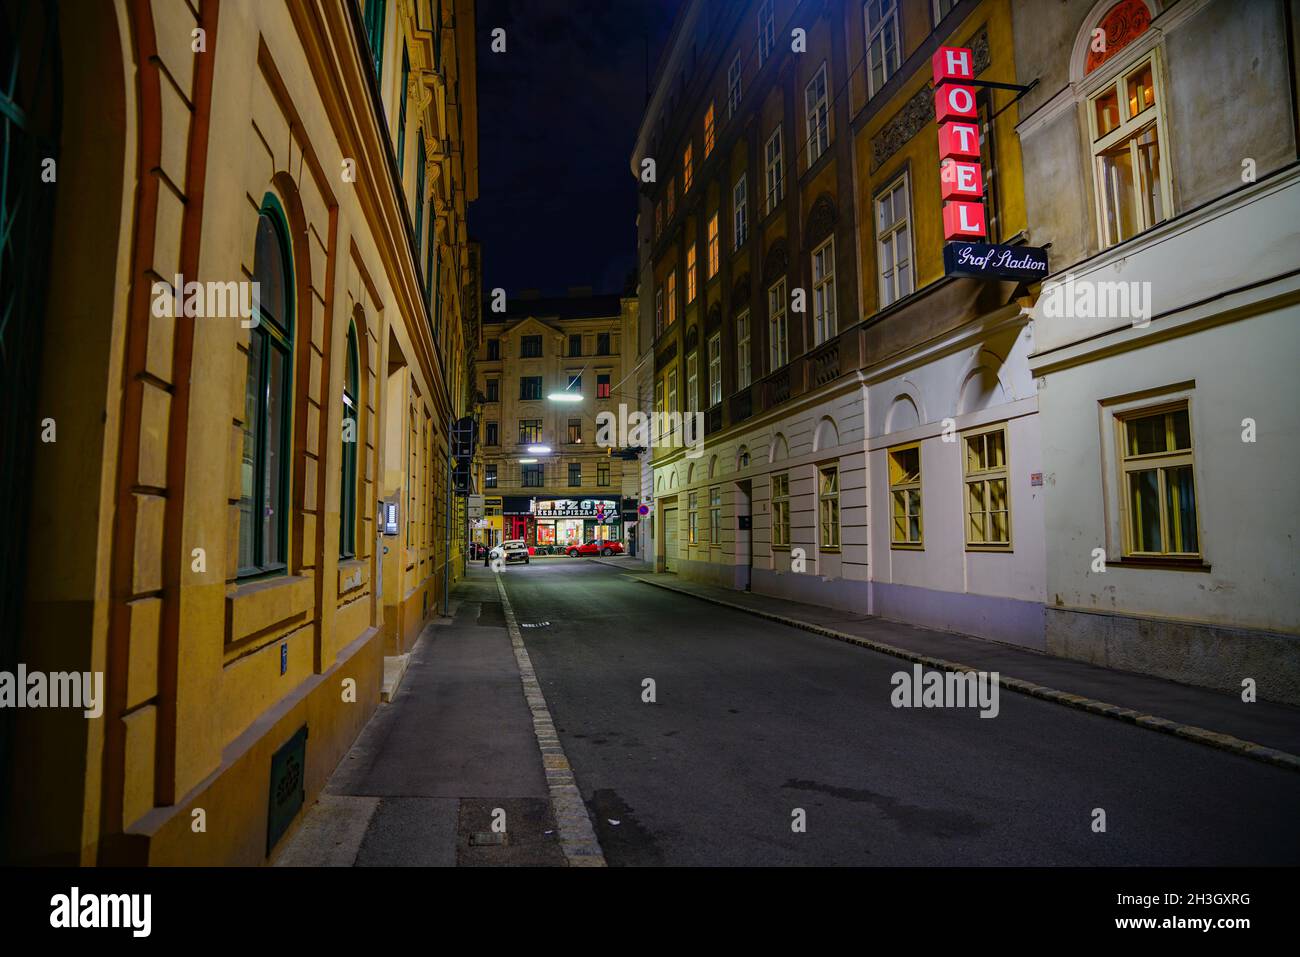 Viena, Austria - 5 2017 de septiembre; vista a lo largo del distrito de negocios urbano, calle estrecha convergiendo hacia la intersección con la señal de hotel iluminada en rojo Foto de stock